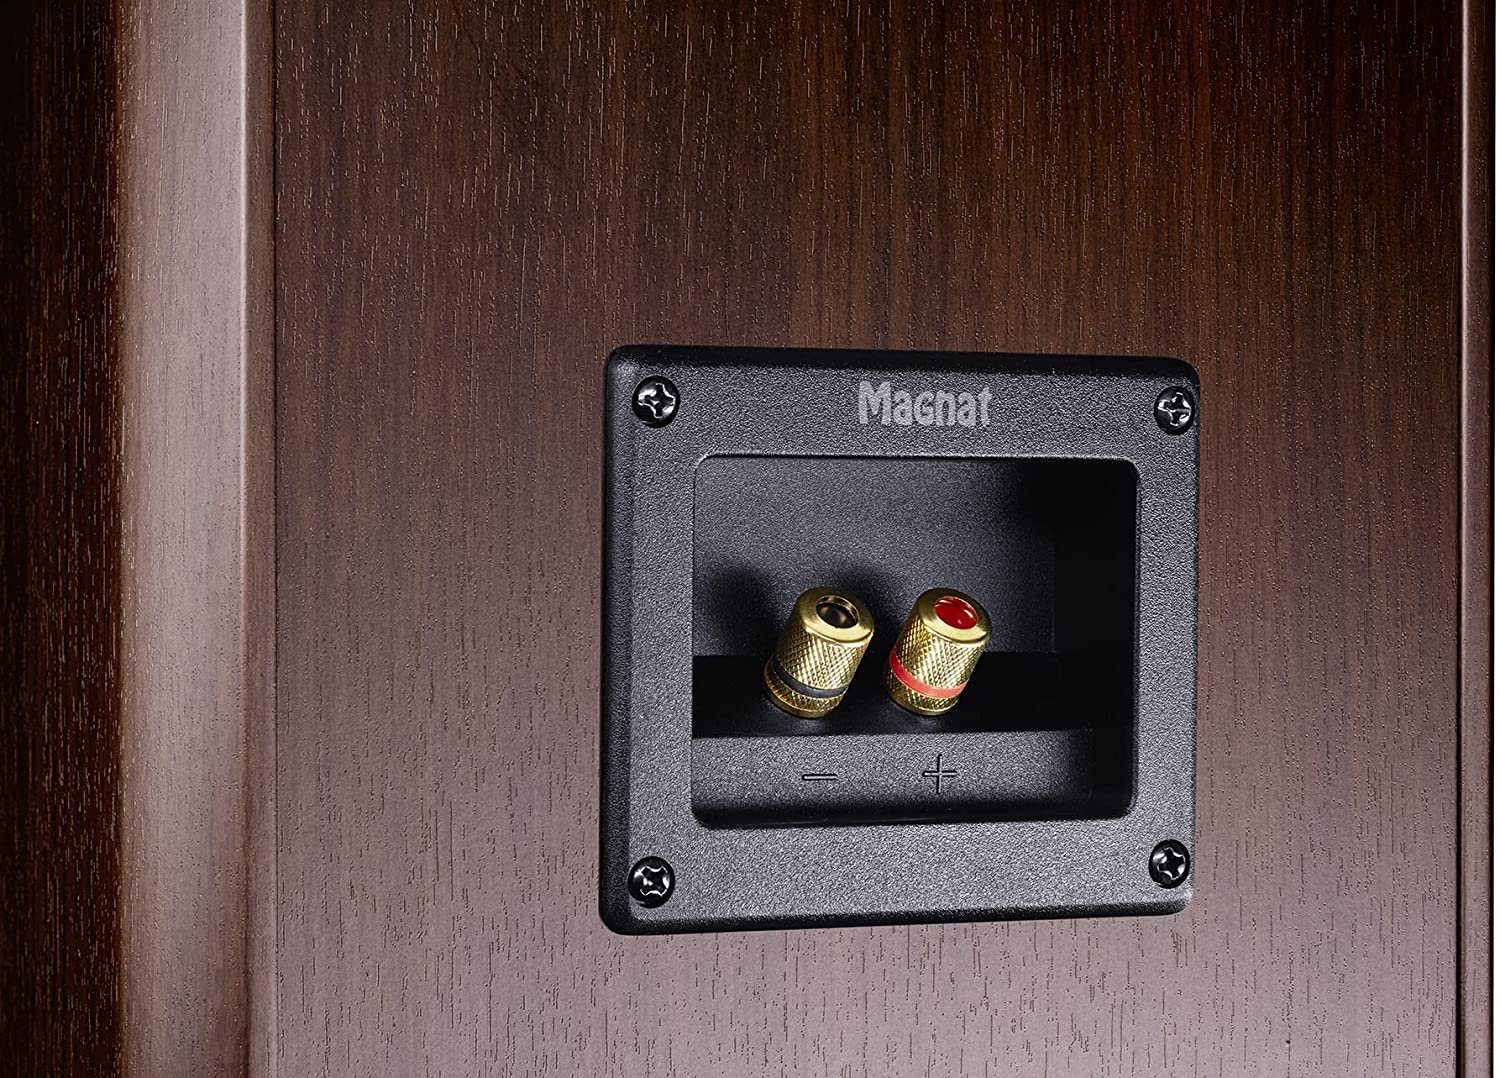 Magnat Monitor Supreme 1002 Lautsprecher von der Braun 380W Leistung mit Passiv, Stand-Lautsprecher